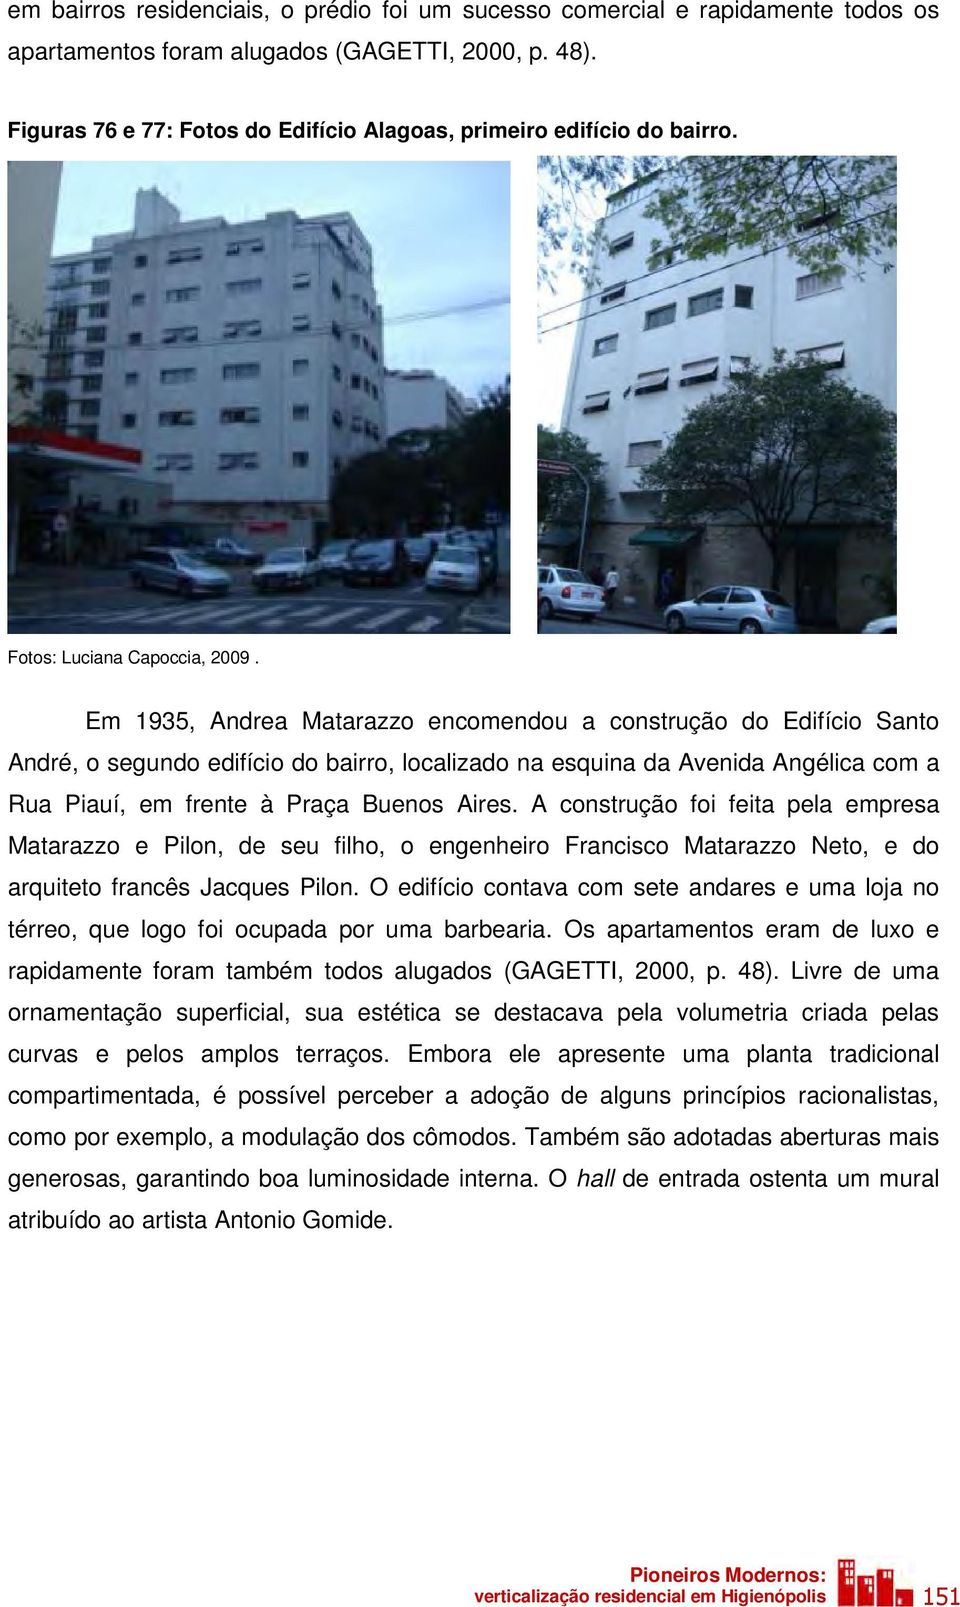 Em 1935, Andrea Matarazzo encomendou a construção do Edifício Santo André, o segundo edifício do bairro, localizado na esquina da Avenida Angélica com a Rua Piauí, em frente à Praça Buenos Aires.